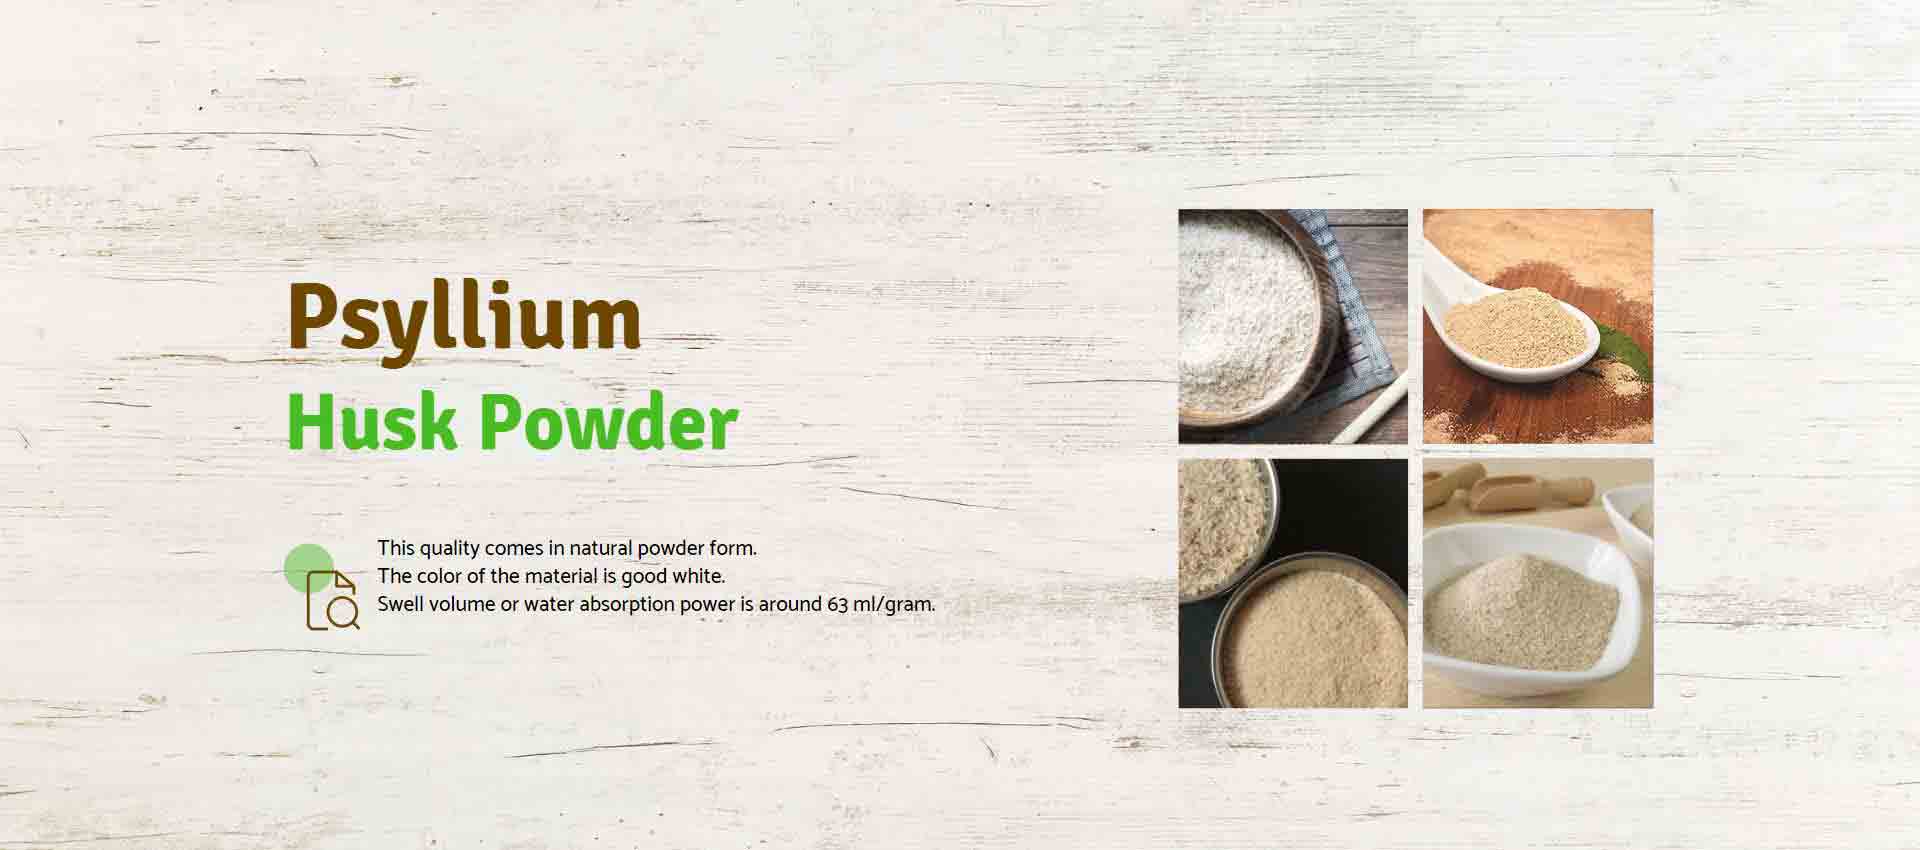 Psyllium Husk Powder Manufacturers in Japan